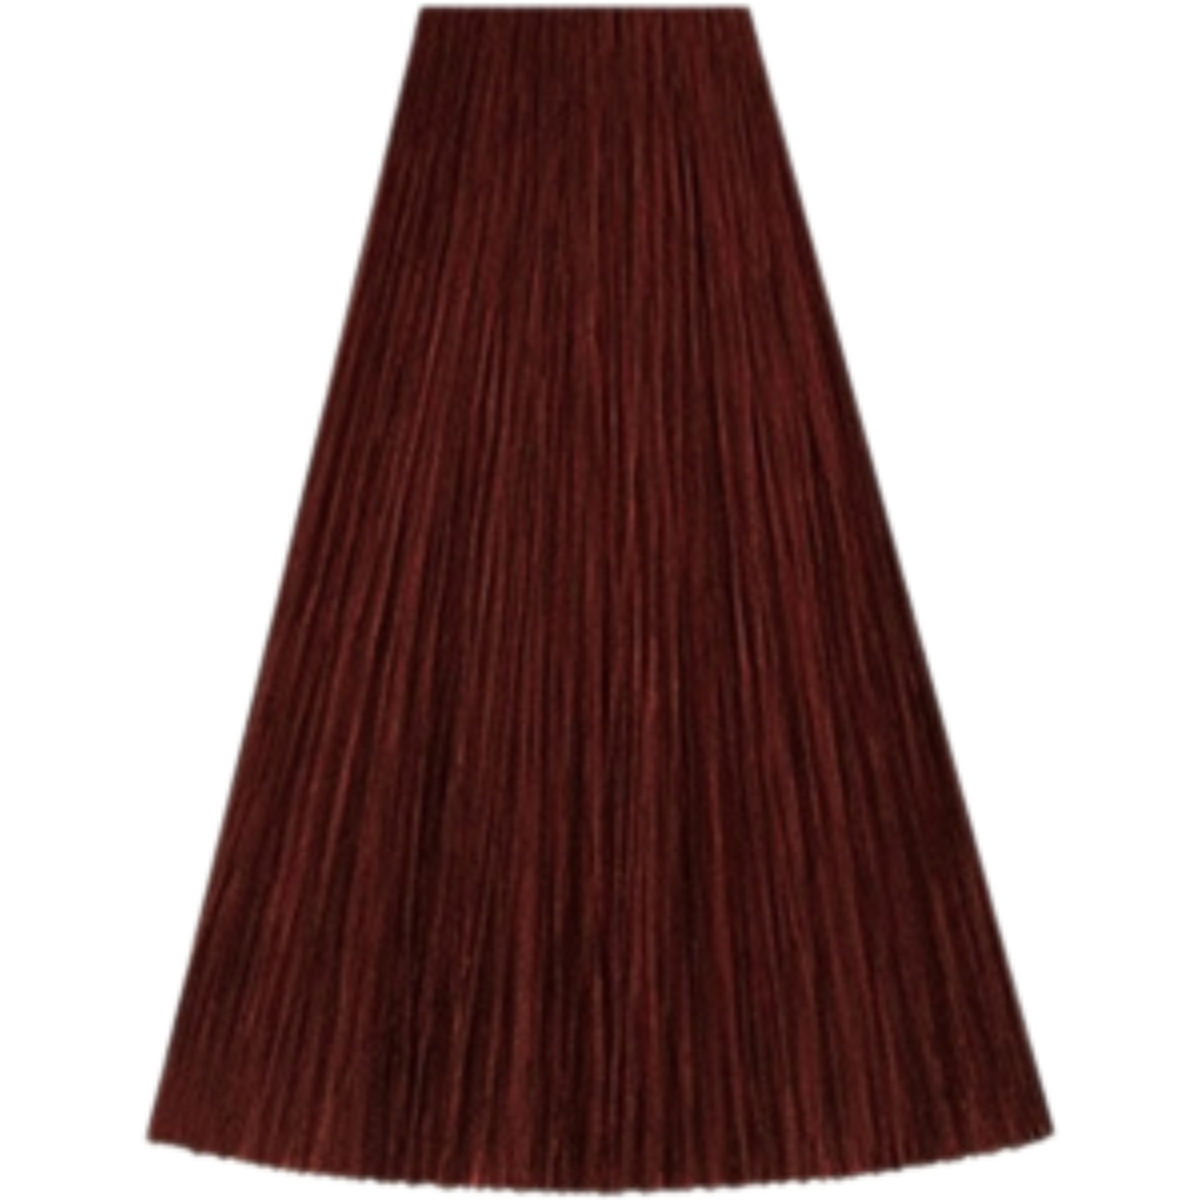 צבע שיער גוון 6/46 DARK BLONDE RED VIOLET קאדוס KADUS צבע לשיער 60 גרם